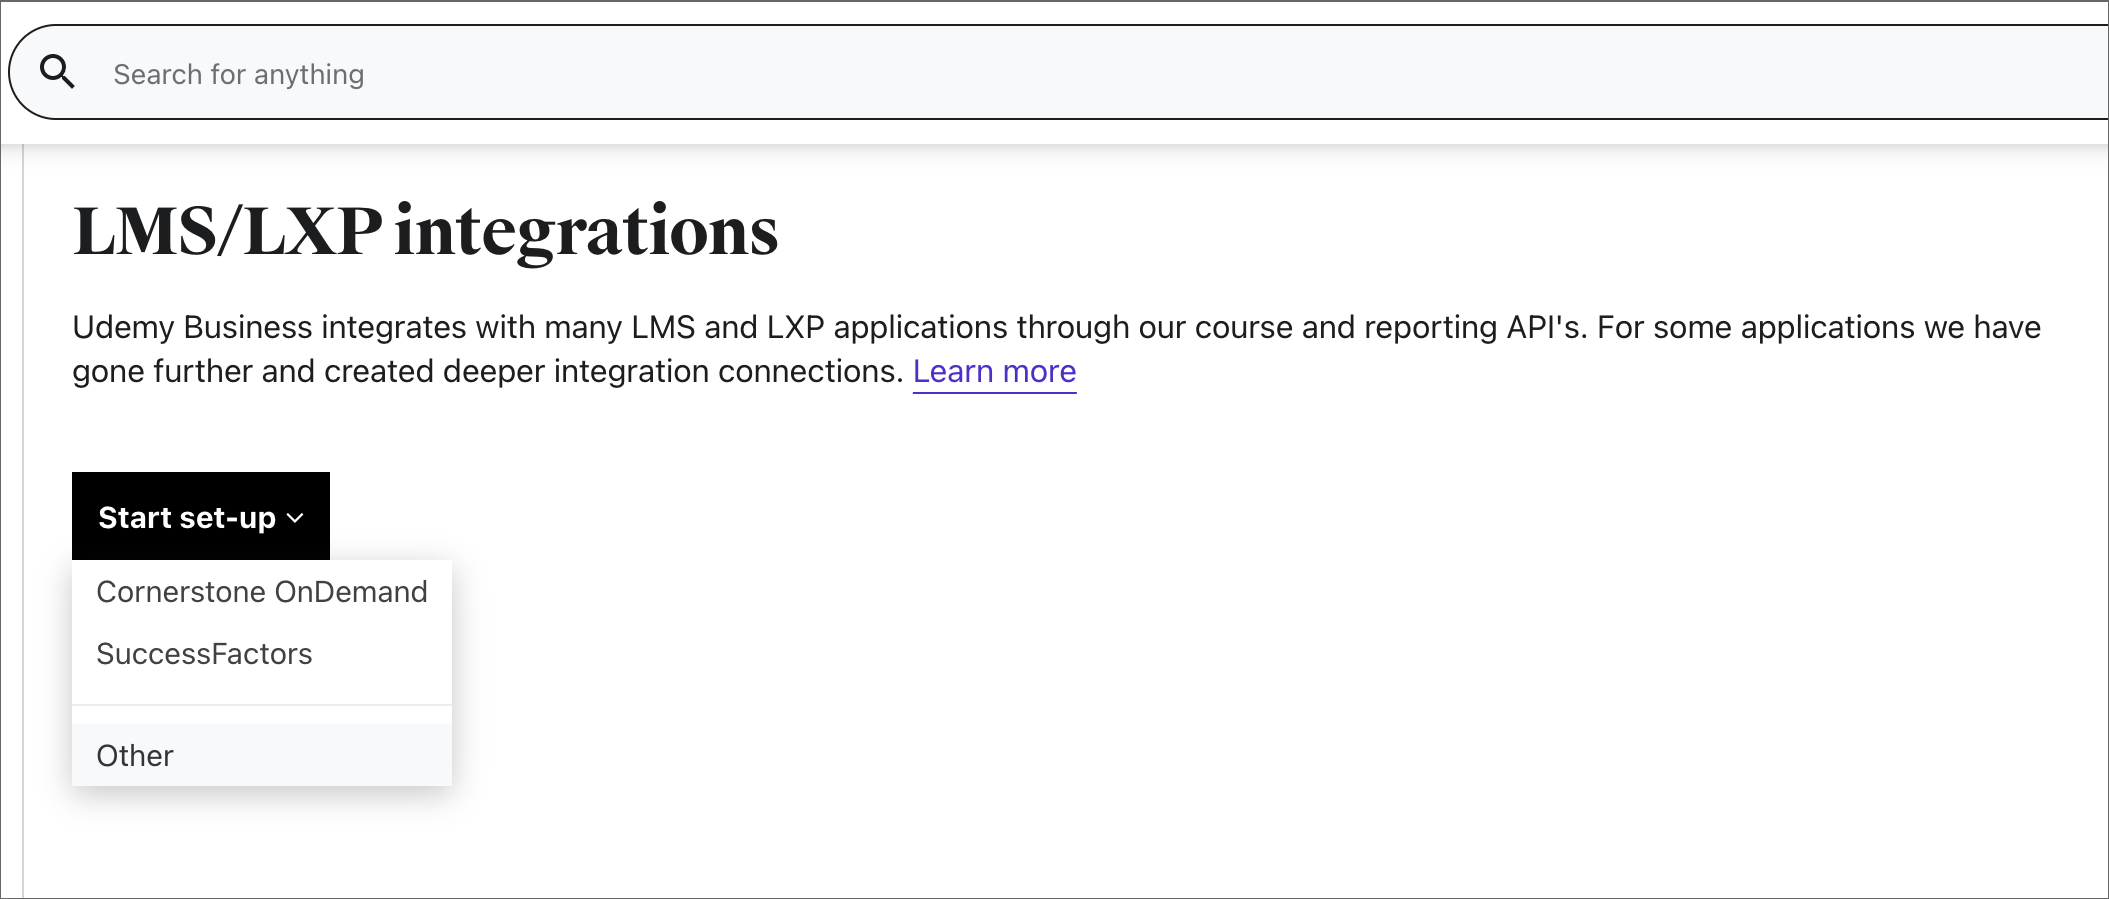 Imagem da página de configurações de Integrações LMS/LXP.